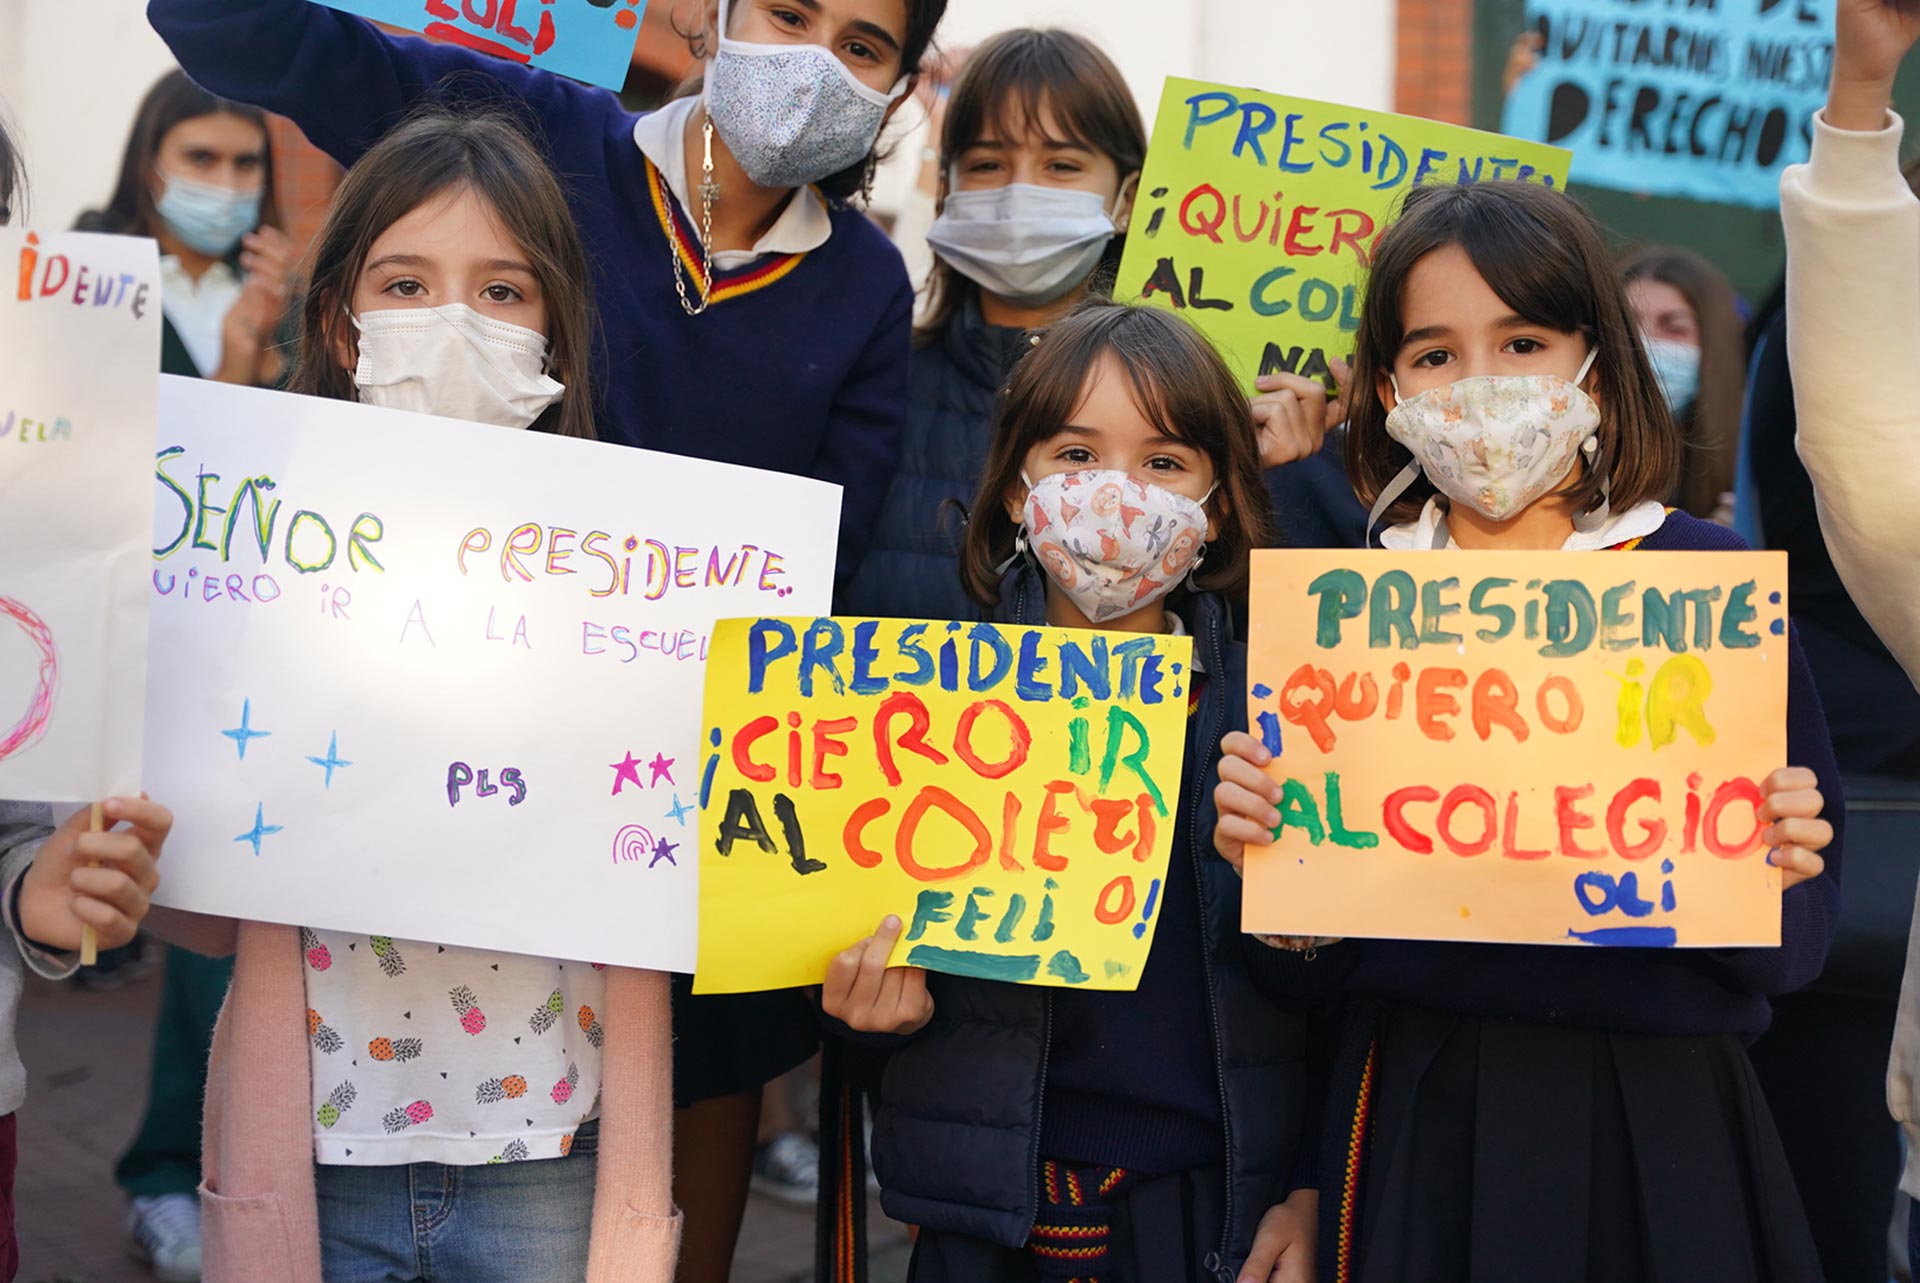 Los alumnos idearon sus propios carteles con mensajes al presidente Alberto Fernández